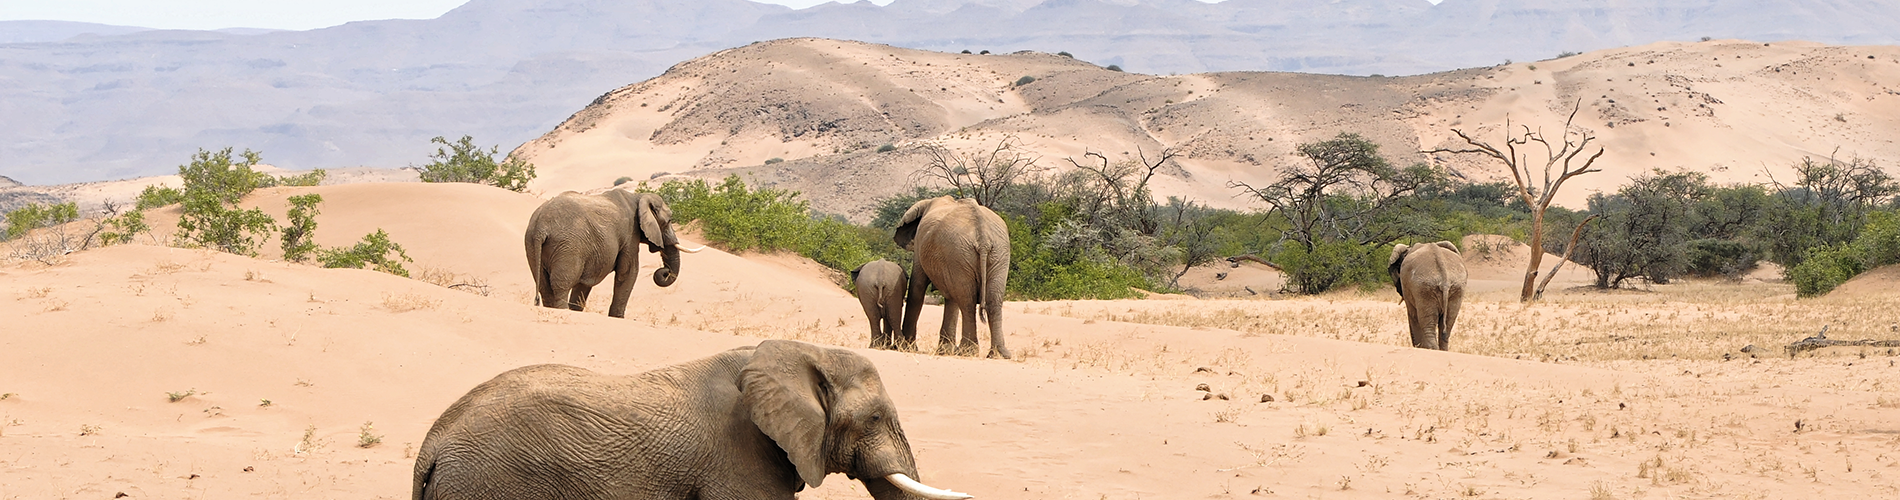 visite plaine africaine animaux liberte elephant